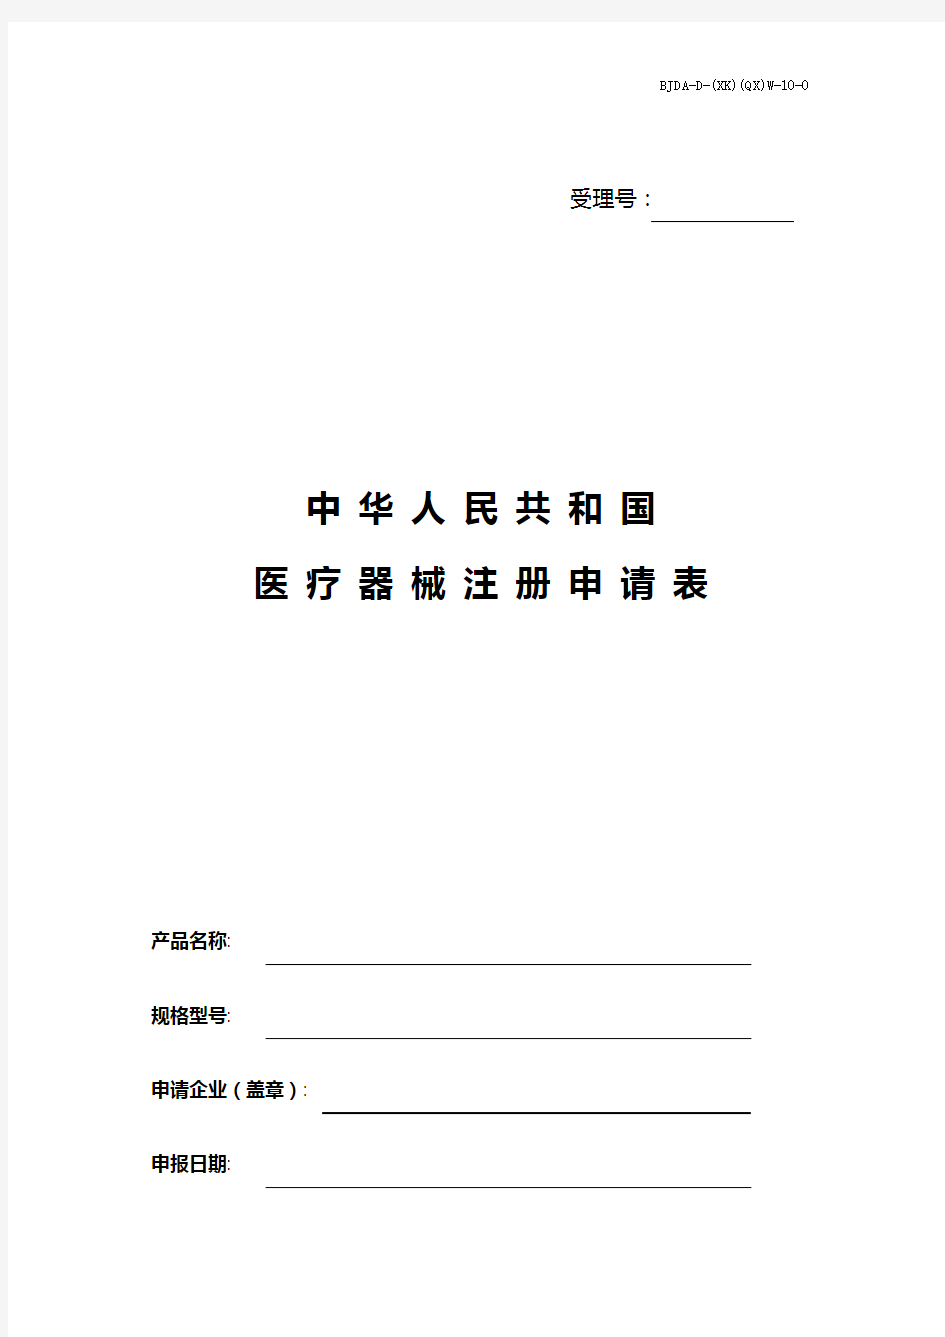 中华人民共和国医疗器械注册申请表